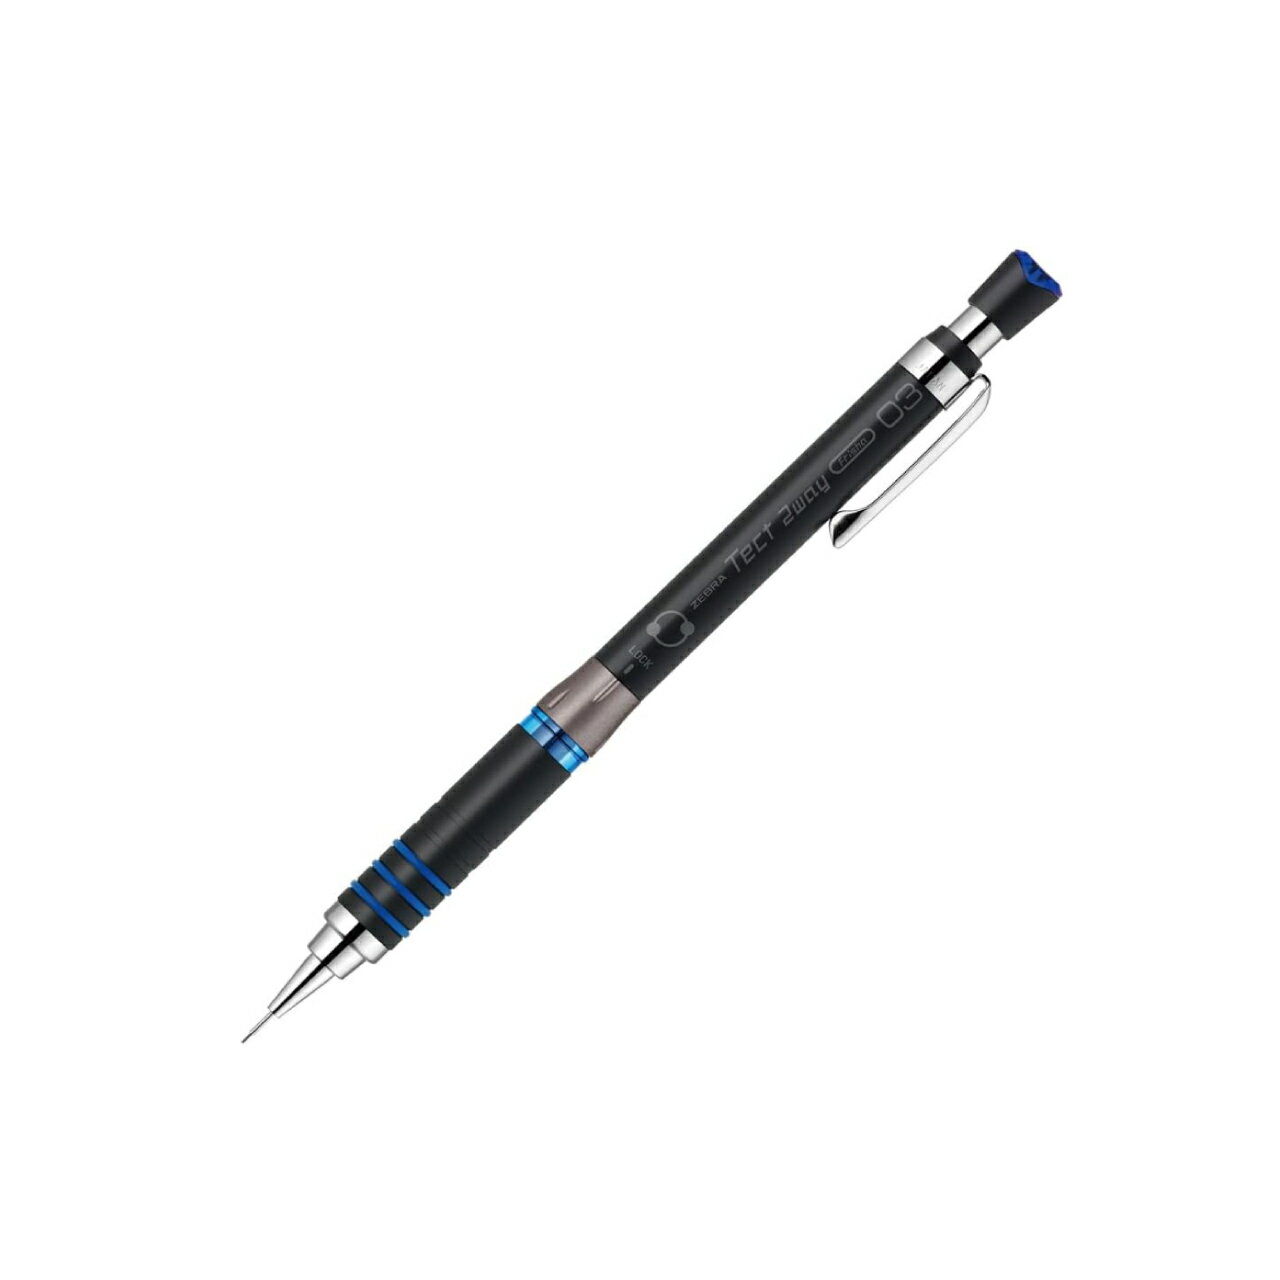 Tect 2Way テクト 2ウェイ シャープペンシル 0.3mm 限定色 ブラックブルー MAS41-23BKB ゆうパケット(メール便)発送